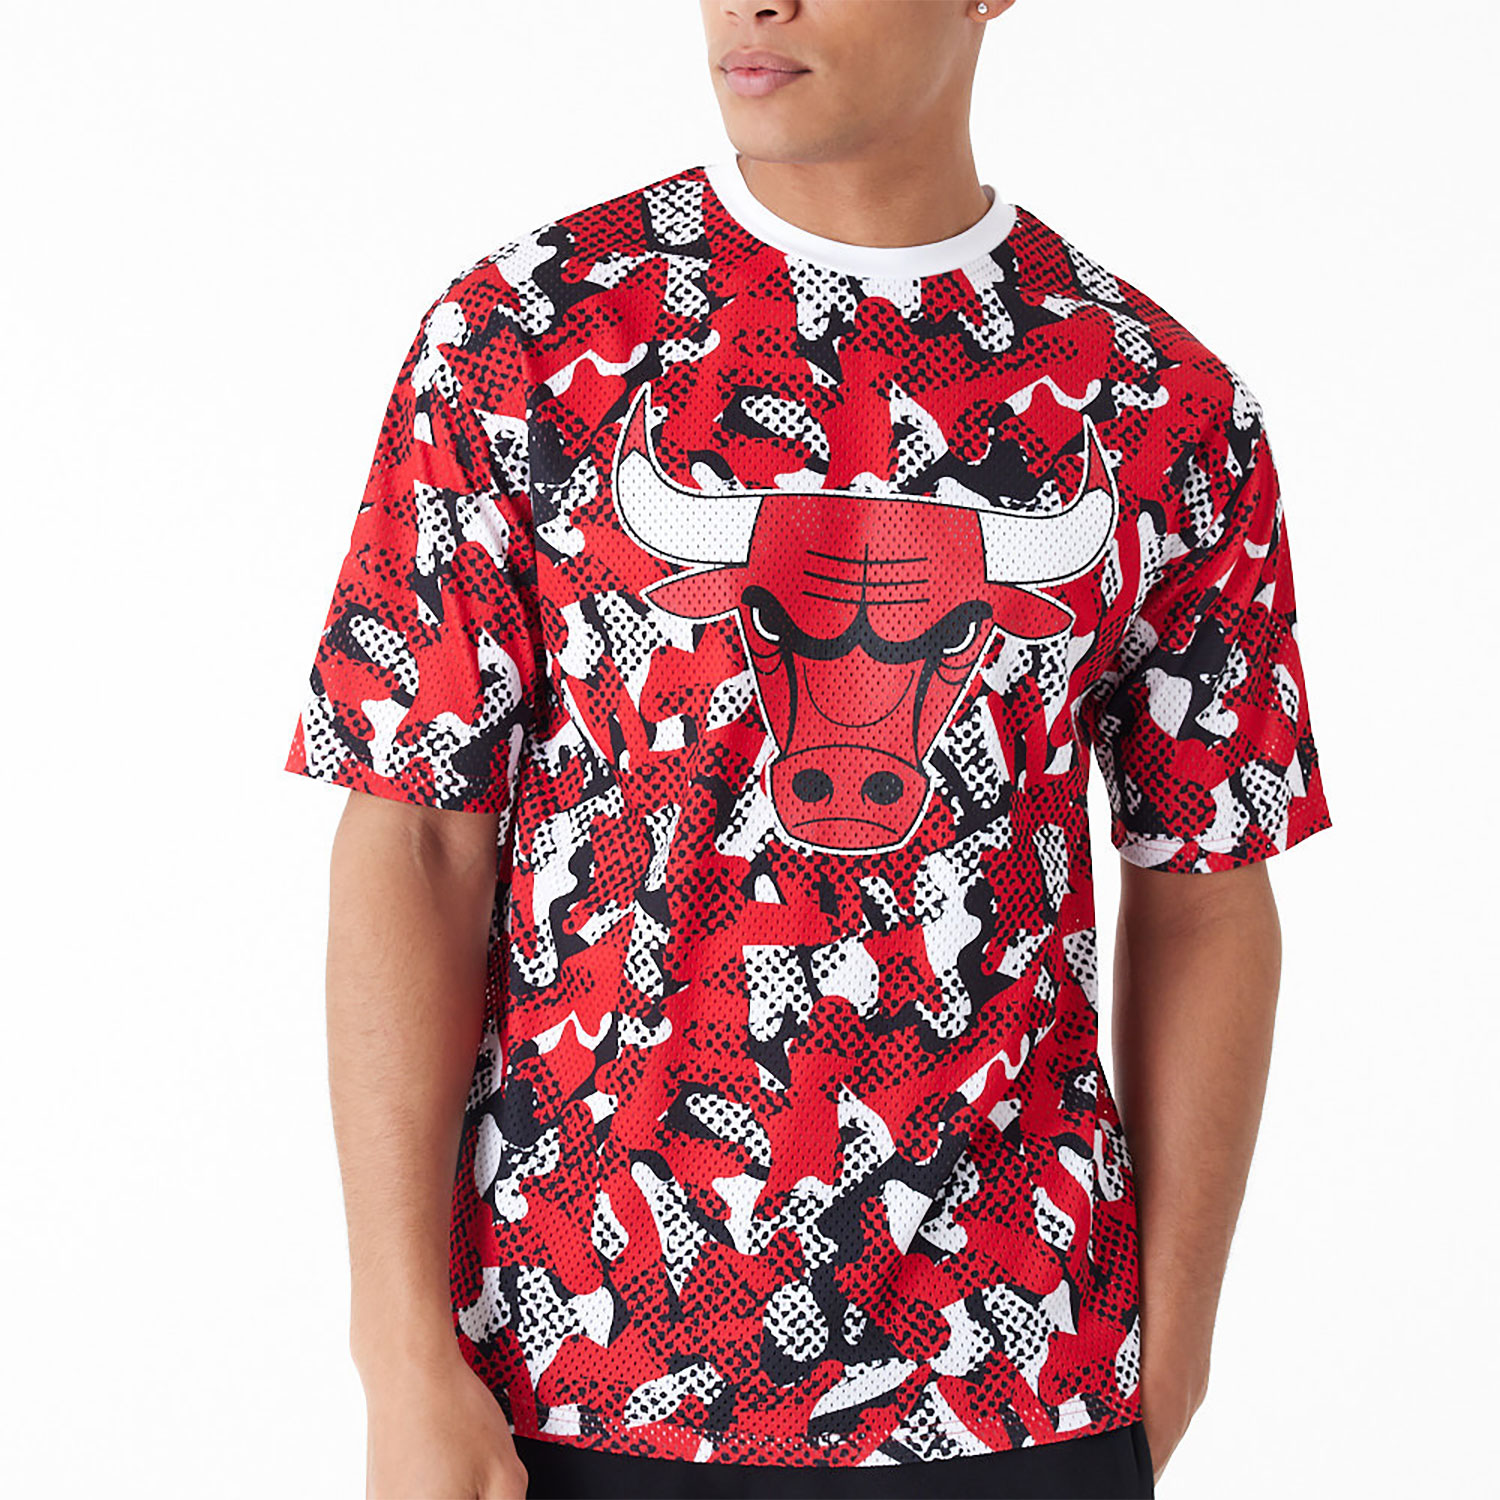 Chicago Bulls NBA Team All Over Print Mesh Red Oversized T-Shirt